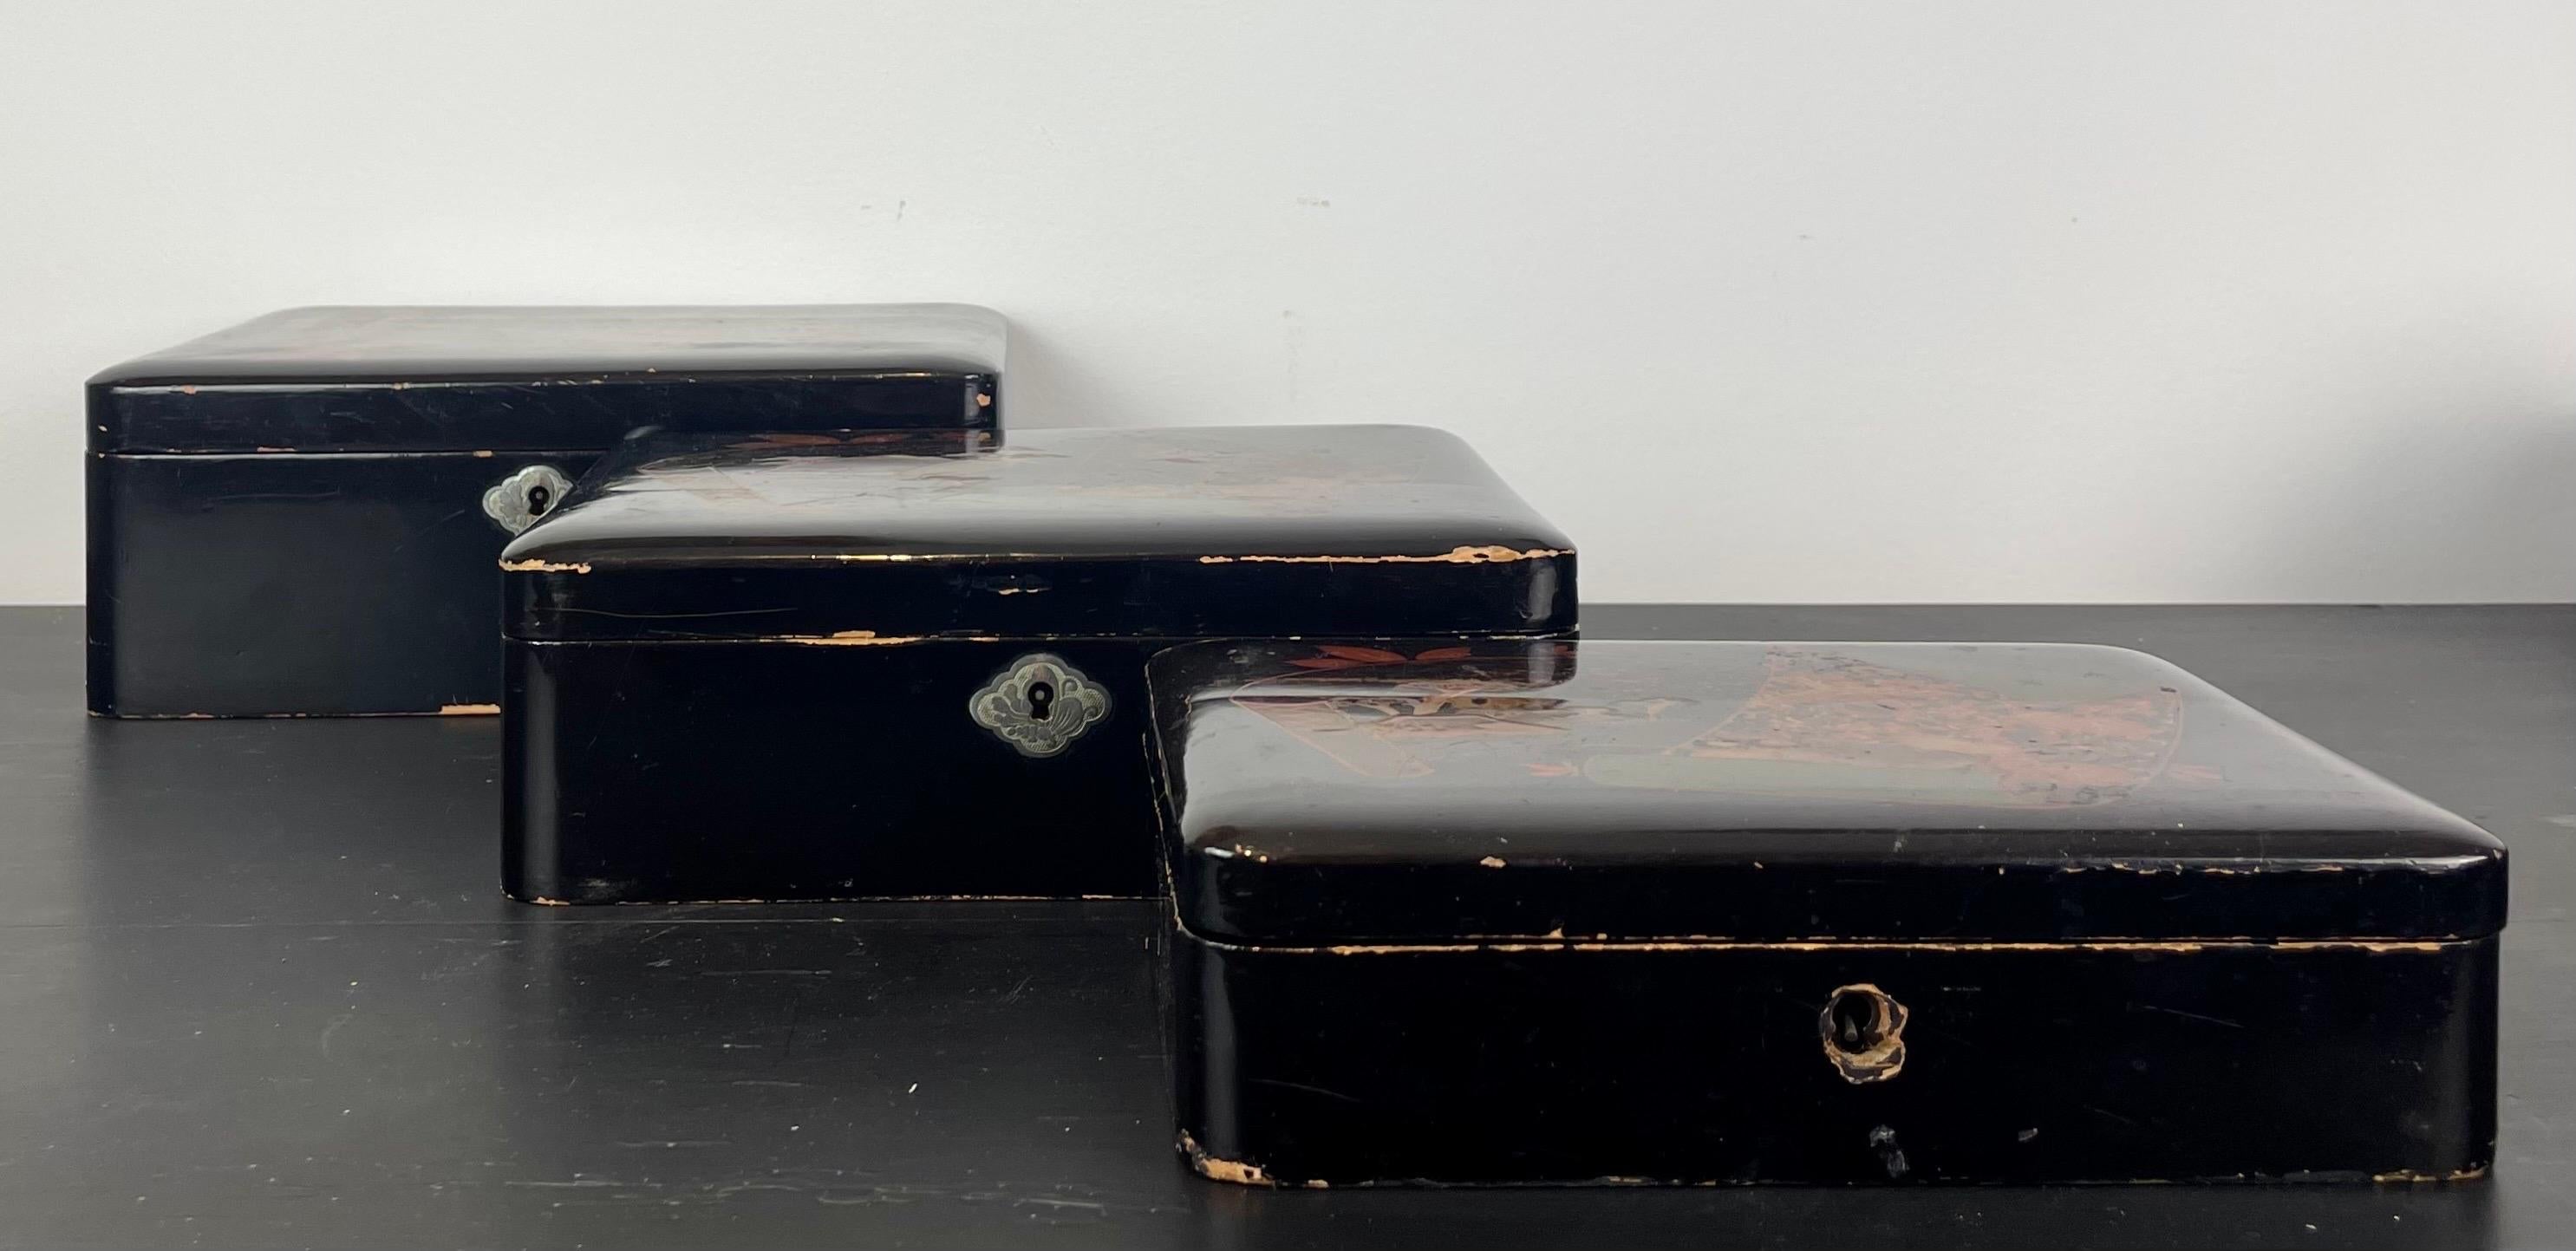 Bel ensemble de trois nichoirs en laque japonaise noire avec leurs deux clés.
Décorée d'oiseaux et de feuillages orange, or et vert.
Les trois boîtes s'emboîtent les unes dans les autres.
L'écusson de la plus petite boîte est manquant.

